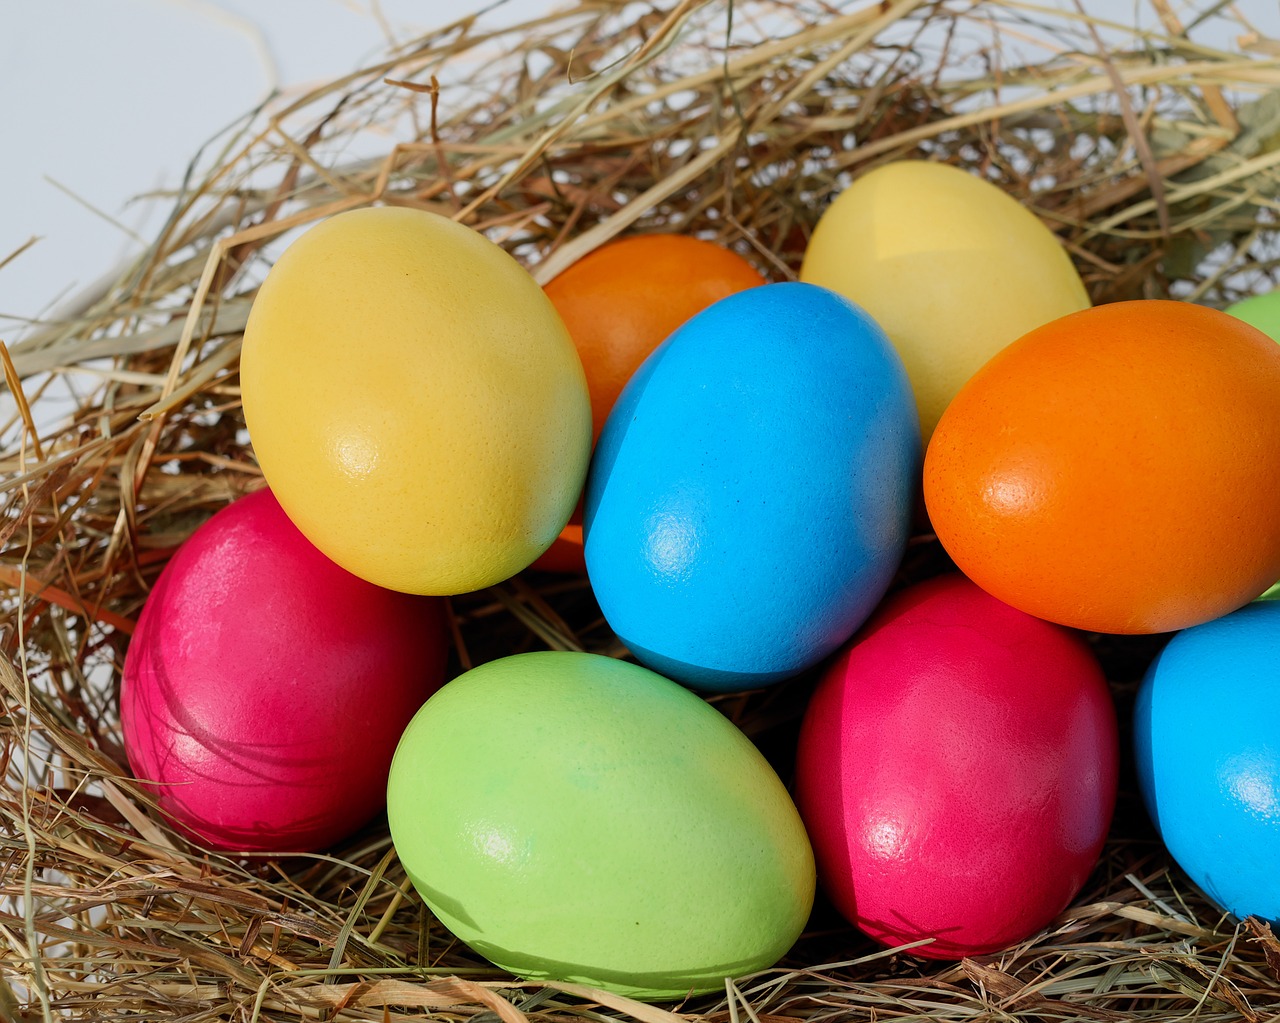 ¿Qué color son los huevos de los patos?